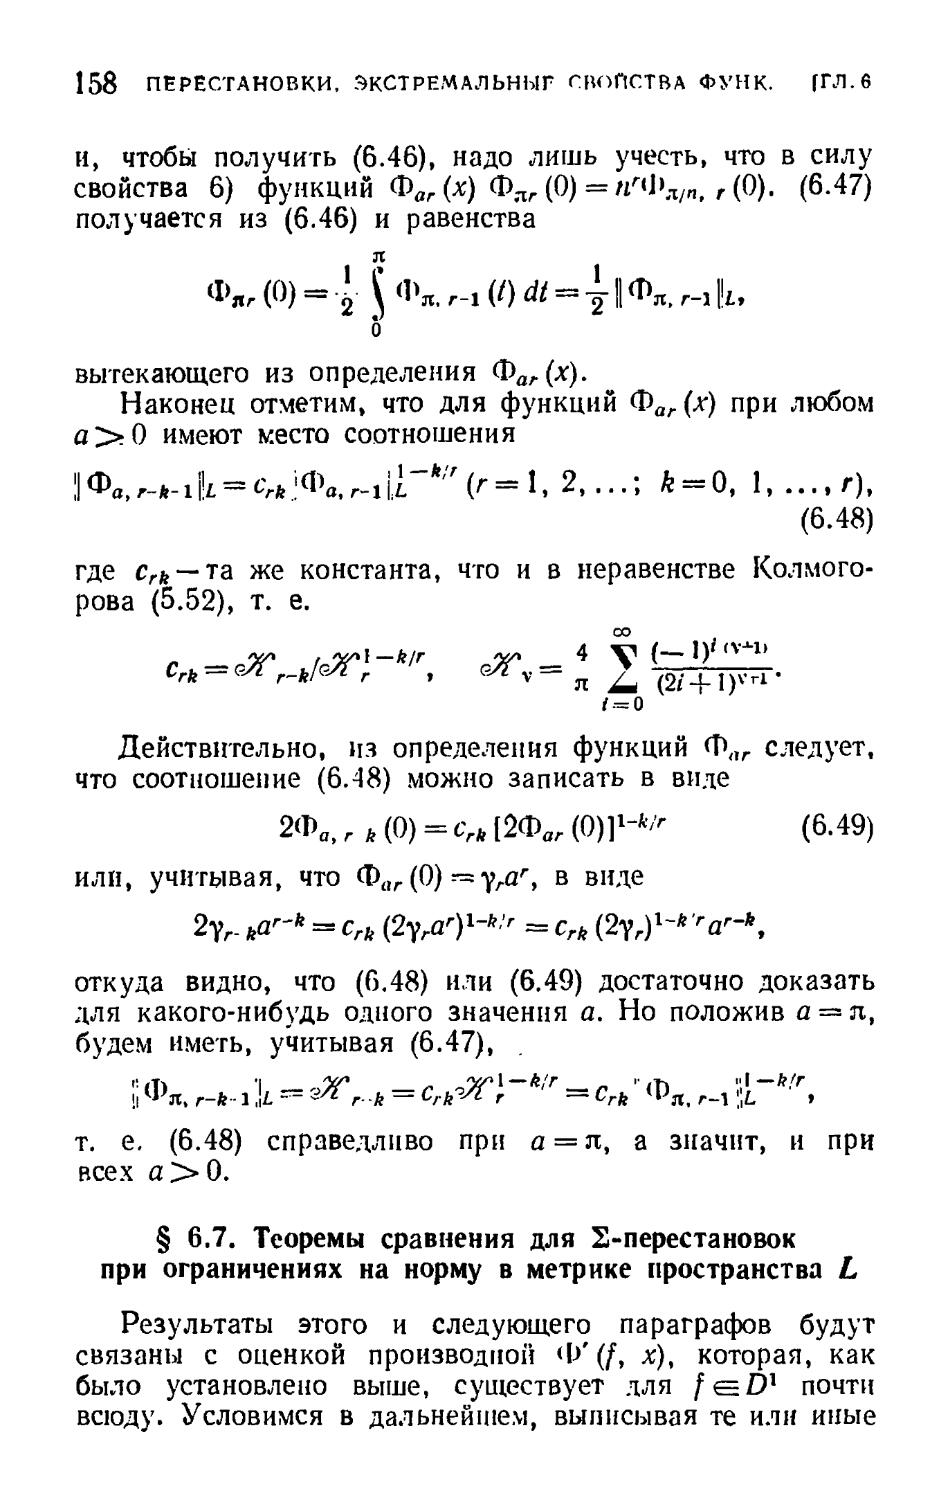 § 6.7. Теоремы сравнения для $\Sigma$-перестановок при ограничениях на норму в метрике пространства $L$